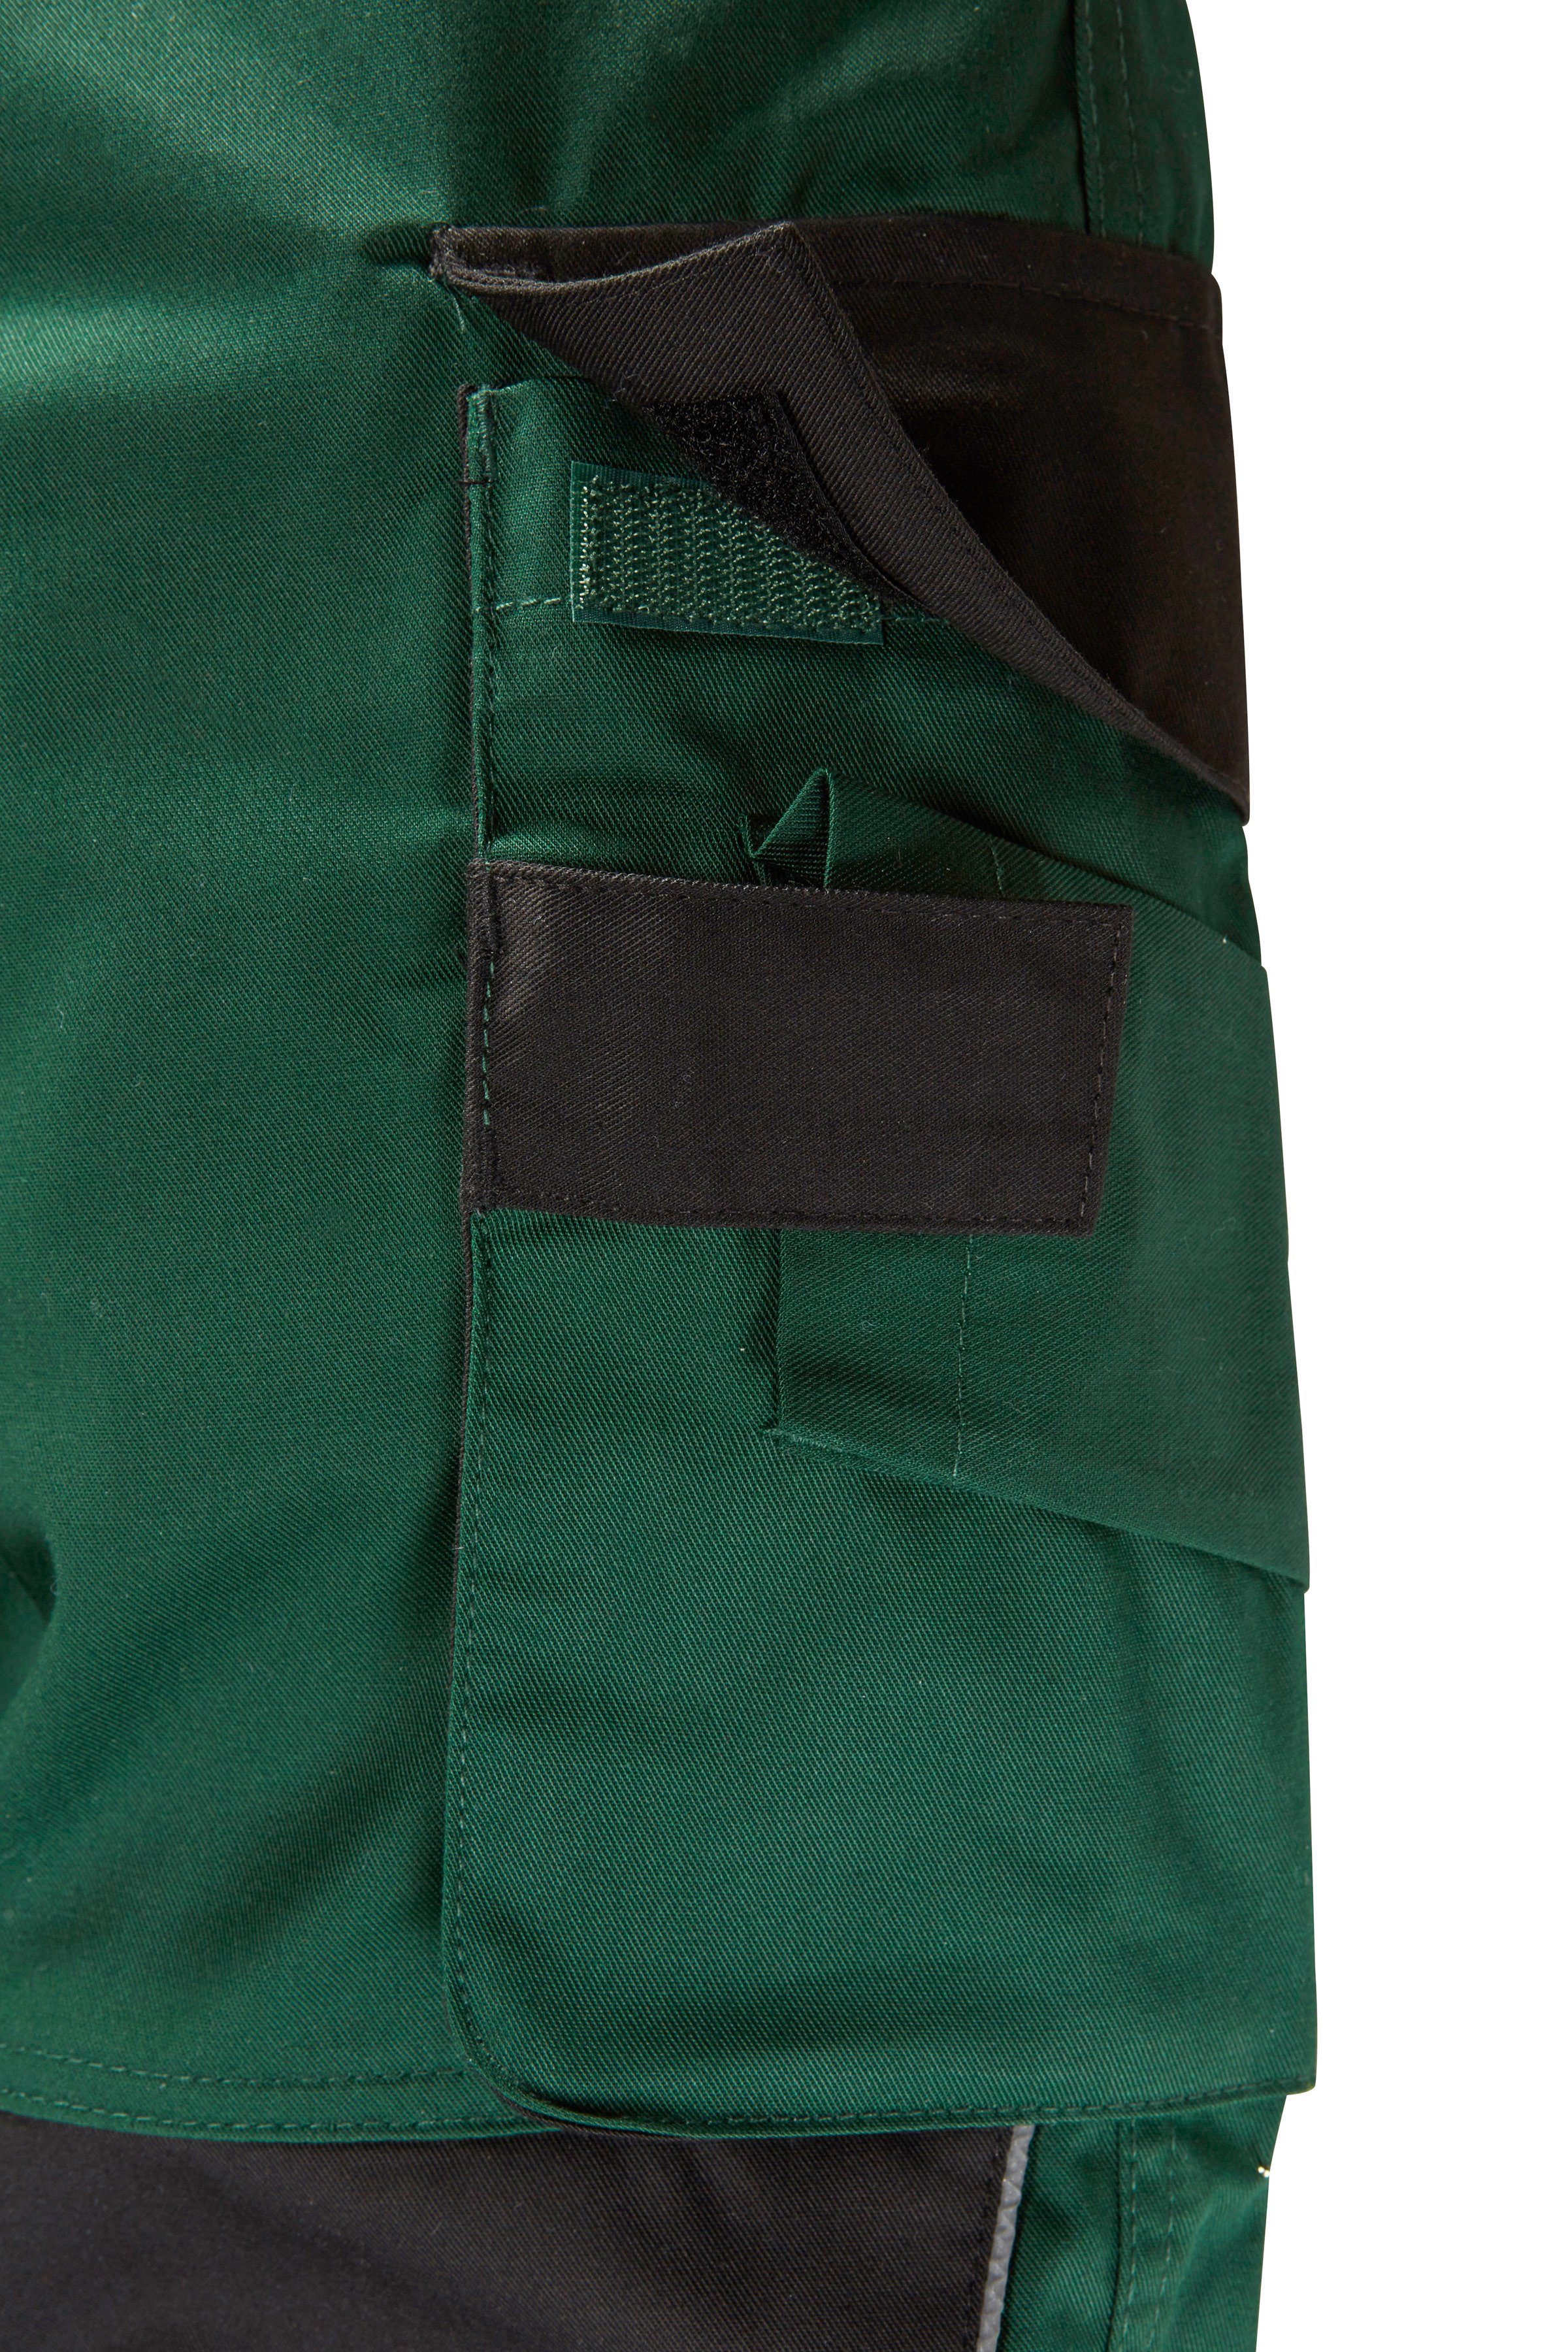 Arbeitshose Knieverstärkung mit Pull grün-schwarz safety& more